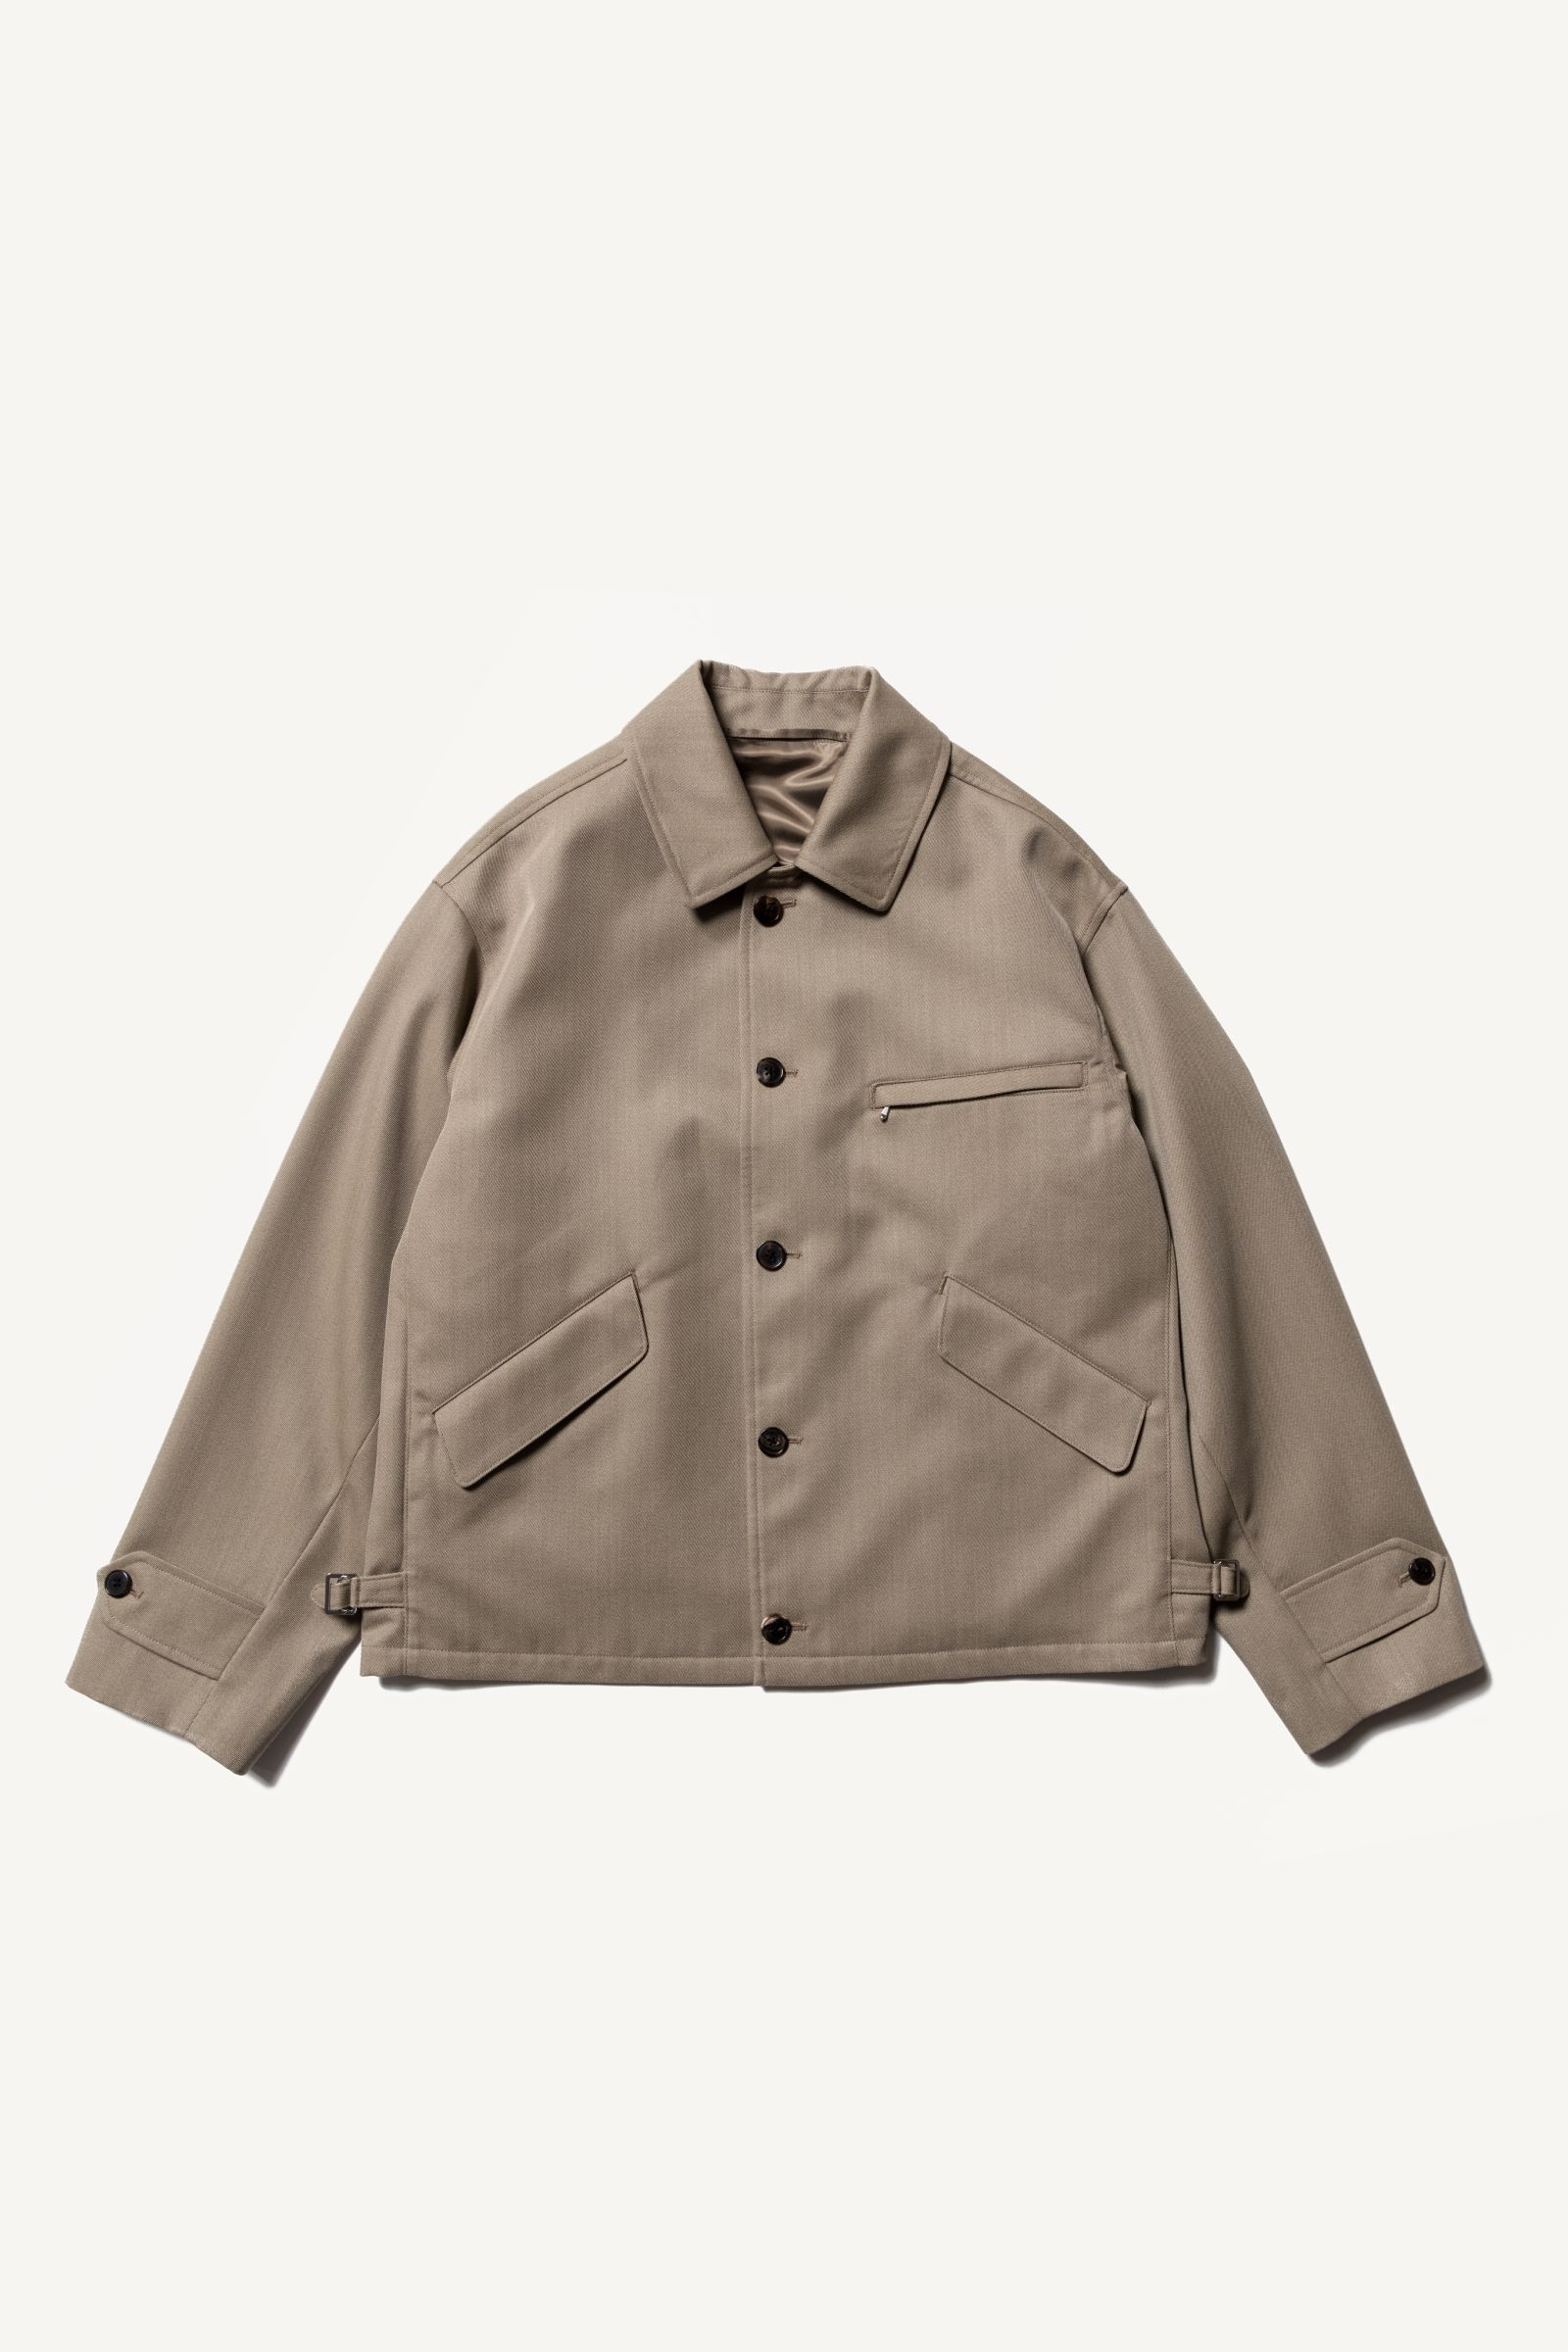 A.PRESSE - covert cloth sports jacket -khaki- 23ss | asterisk